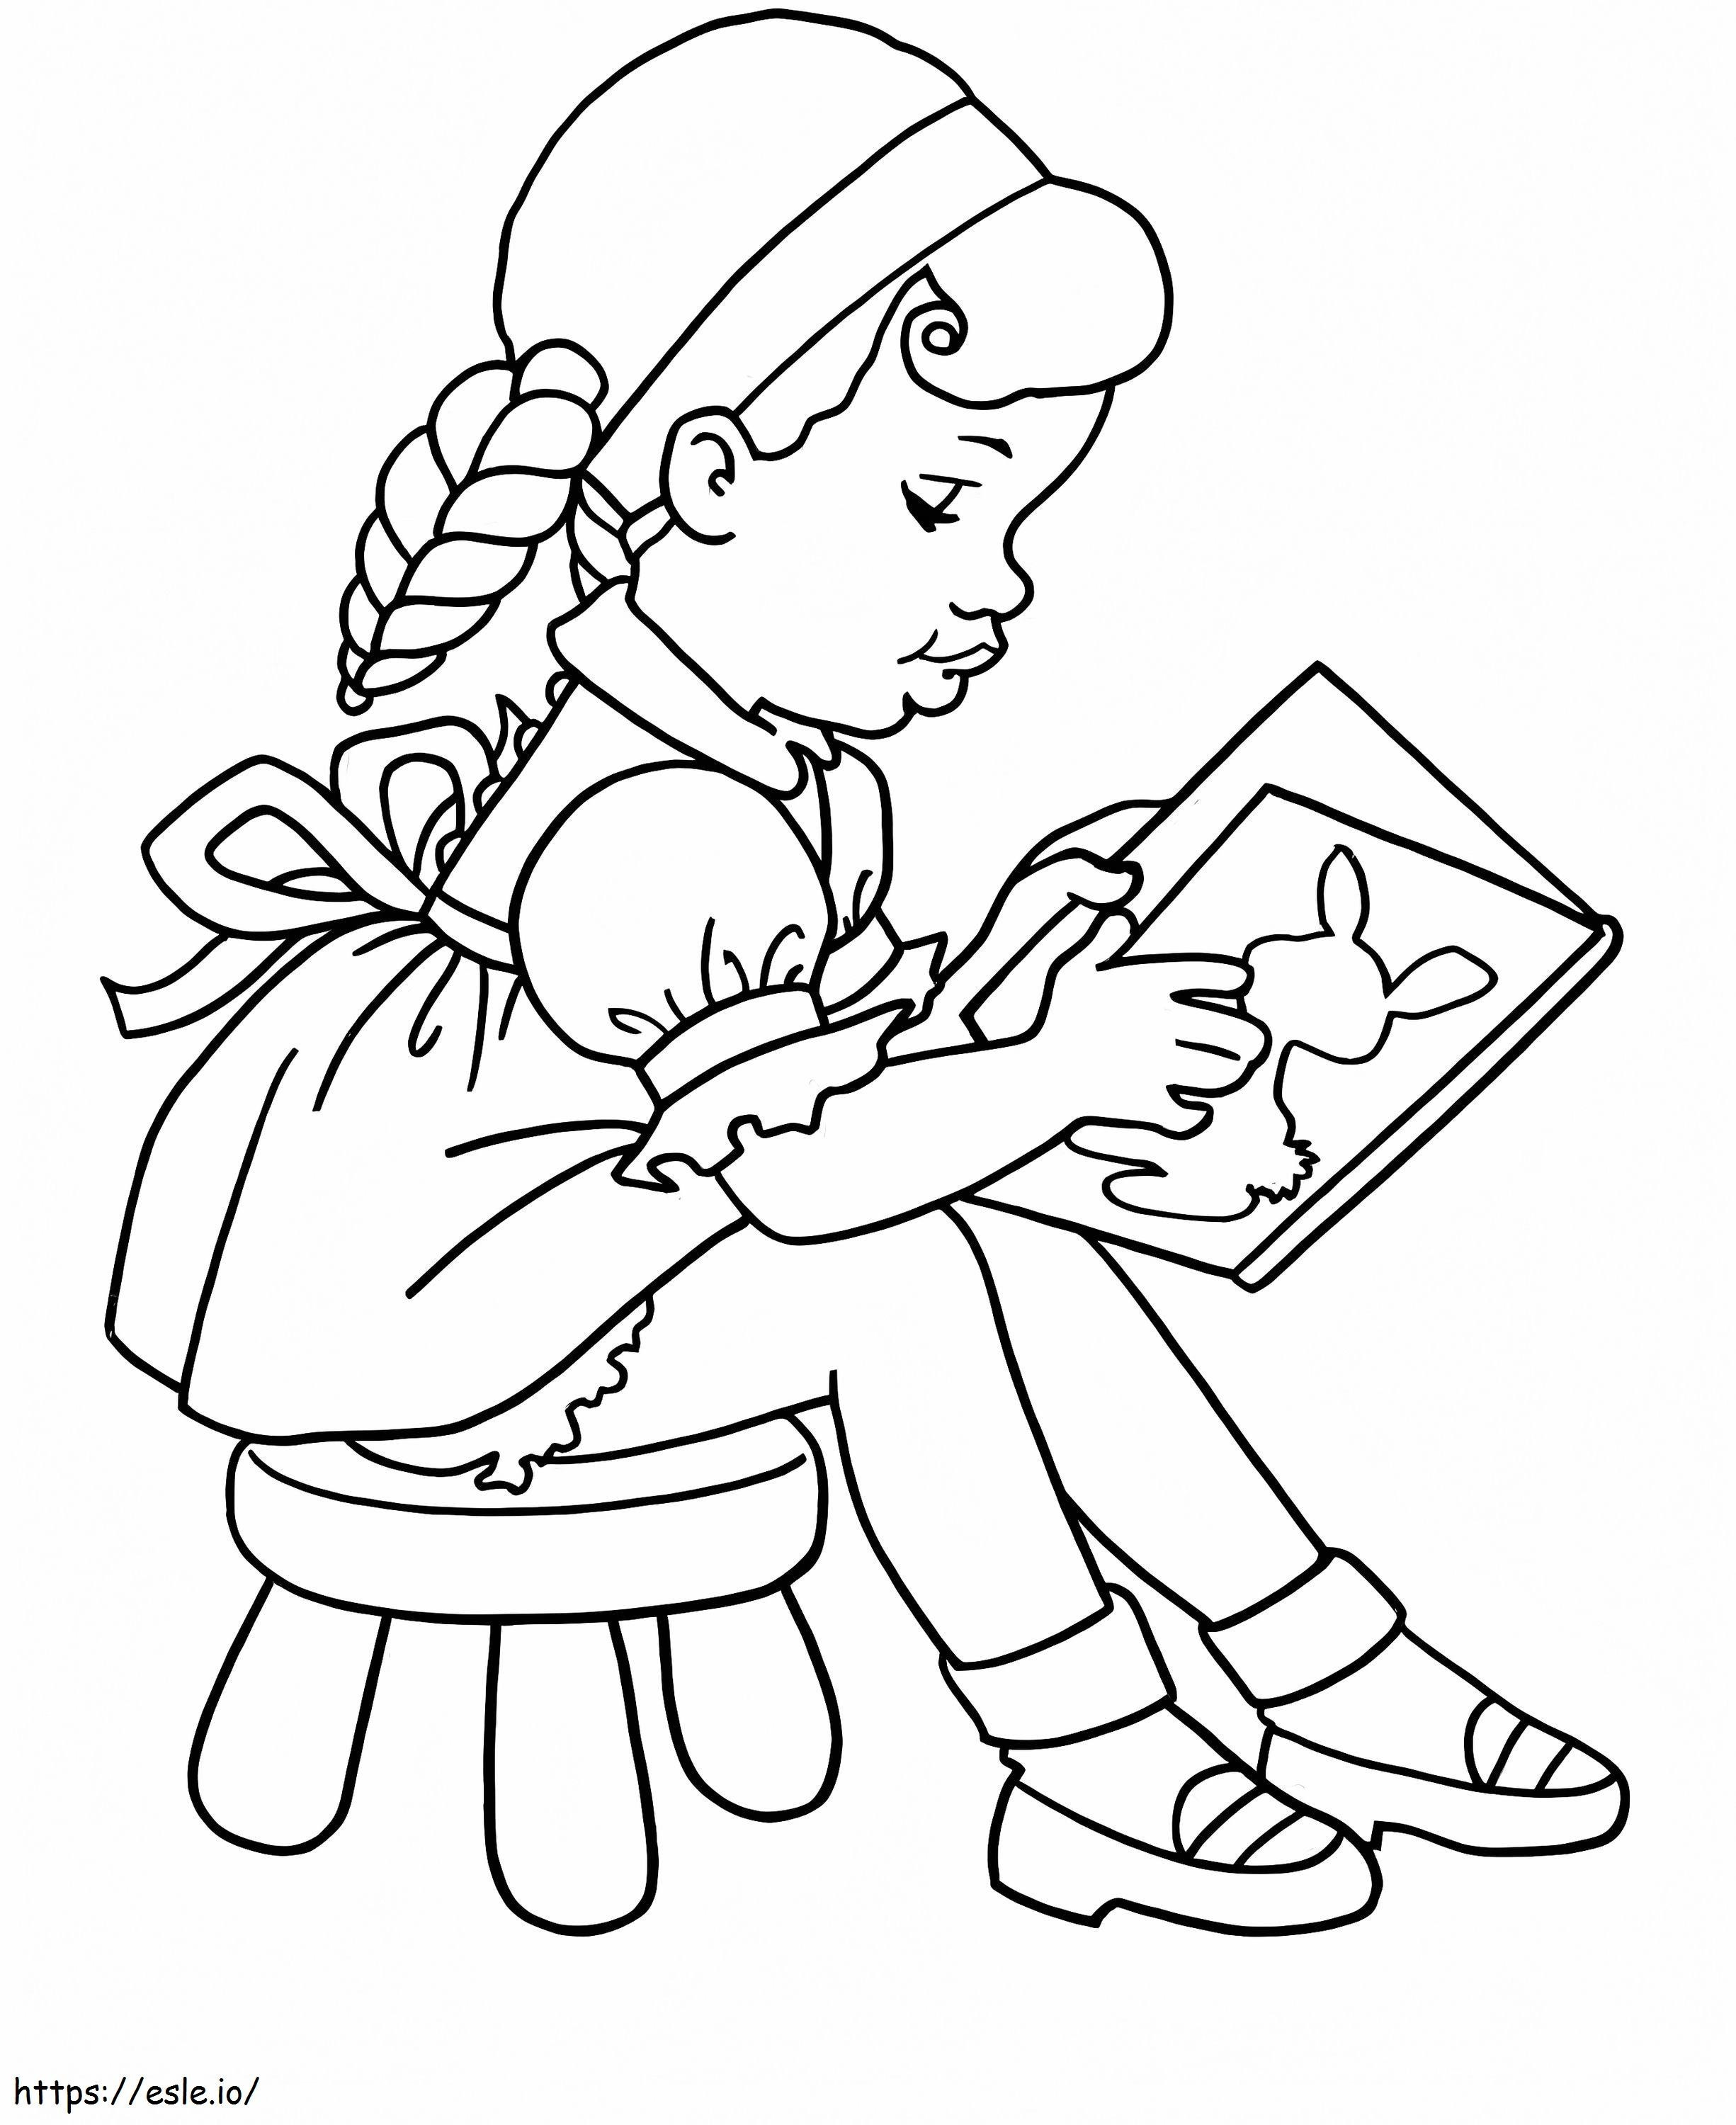 Nina czyta książkę w szkole kolorowanka